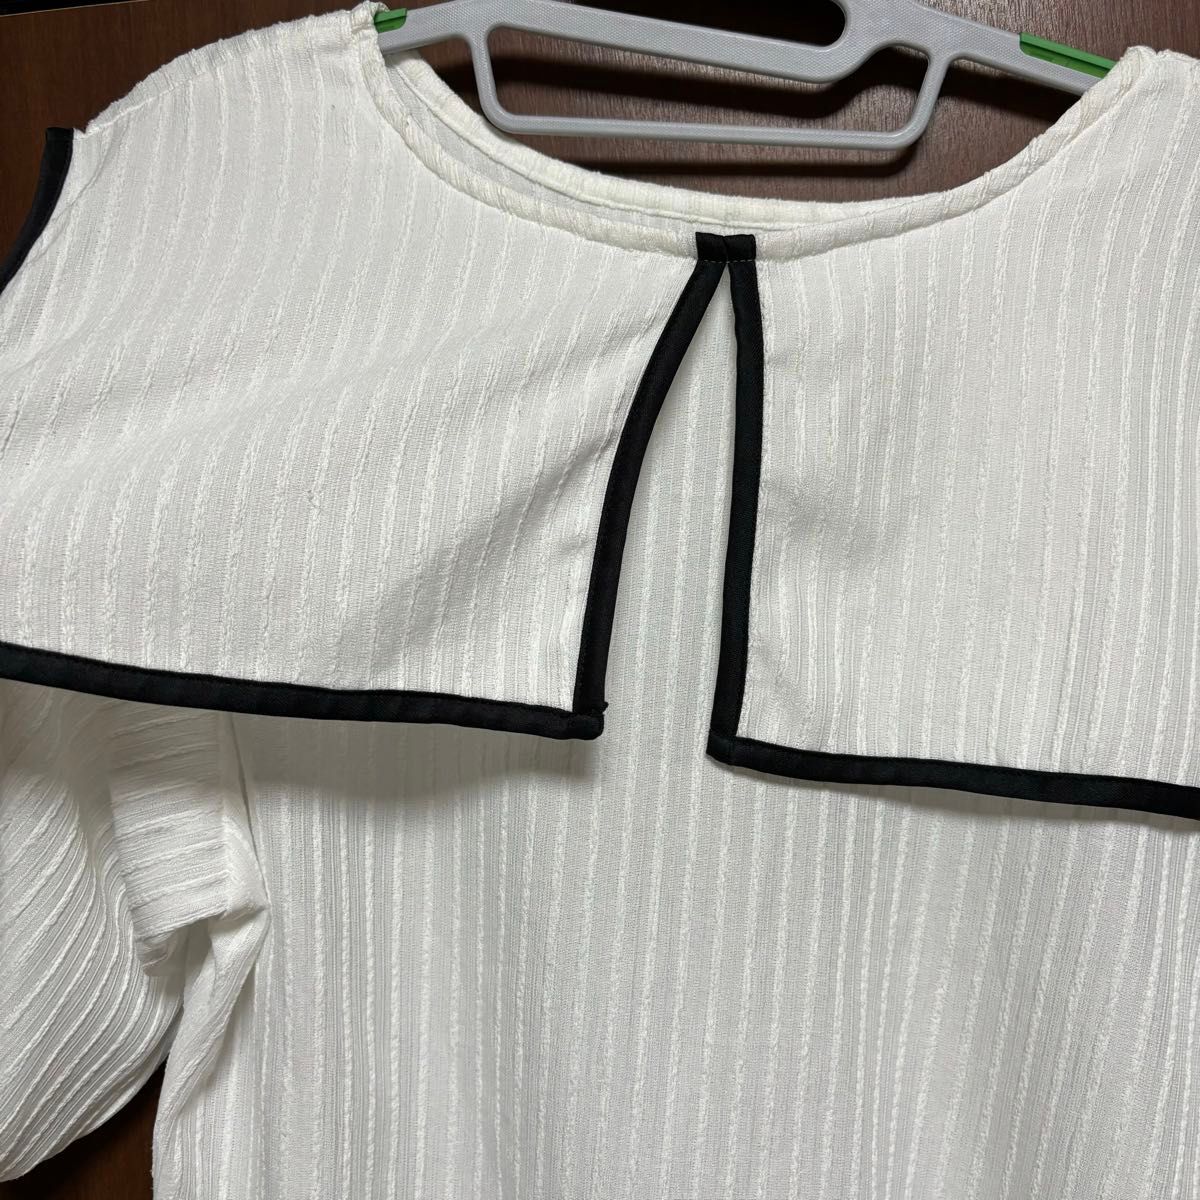 カットソー Tシャツ トップス 白 ホワイト 半袖 プルオーバー ビック衿 セーラー襟 Lサイズ